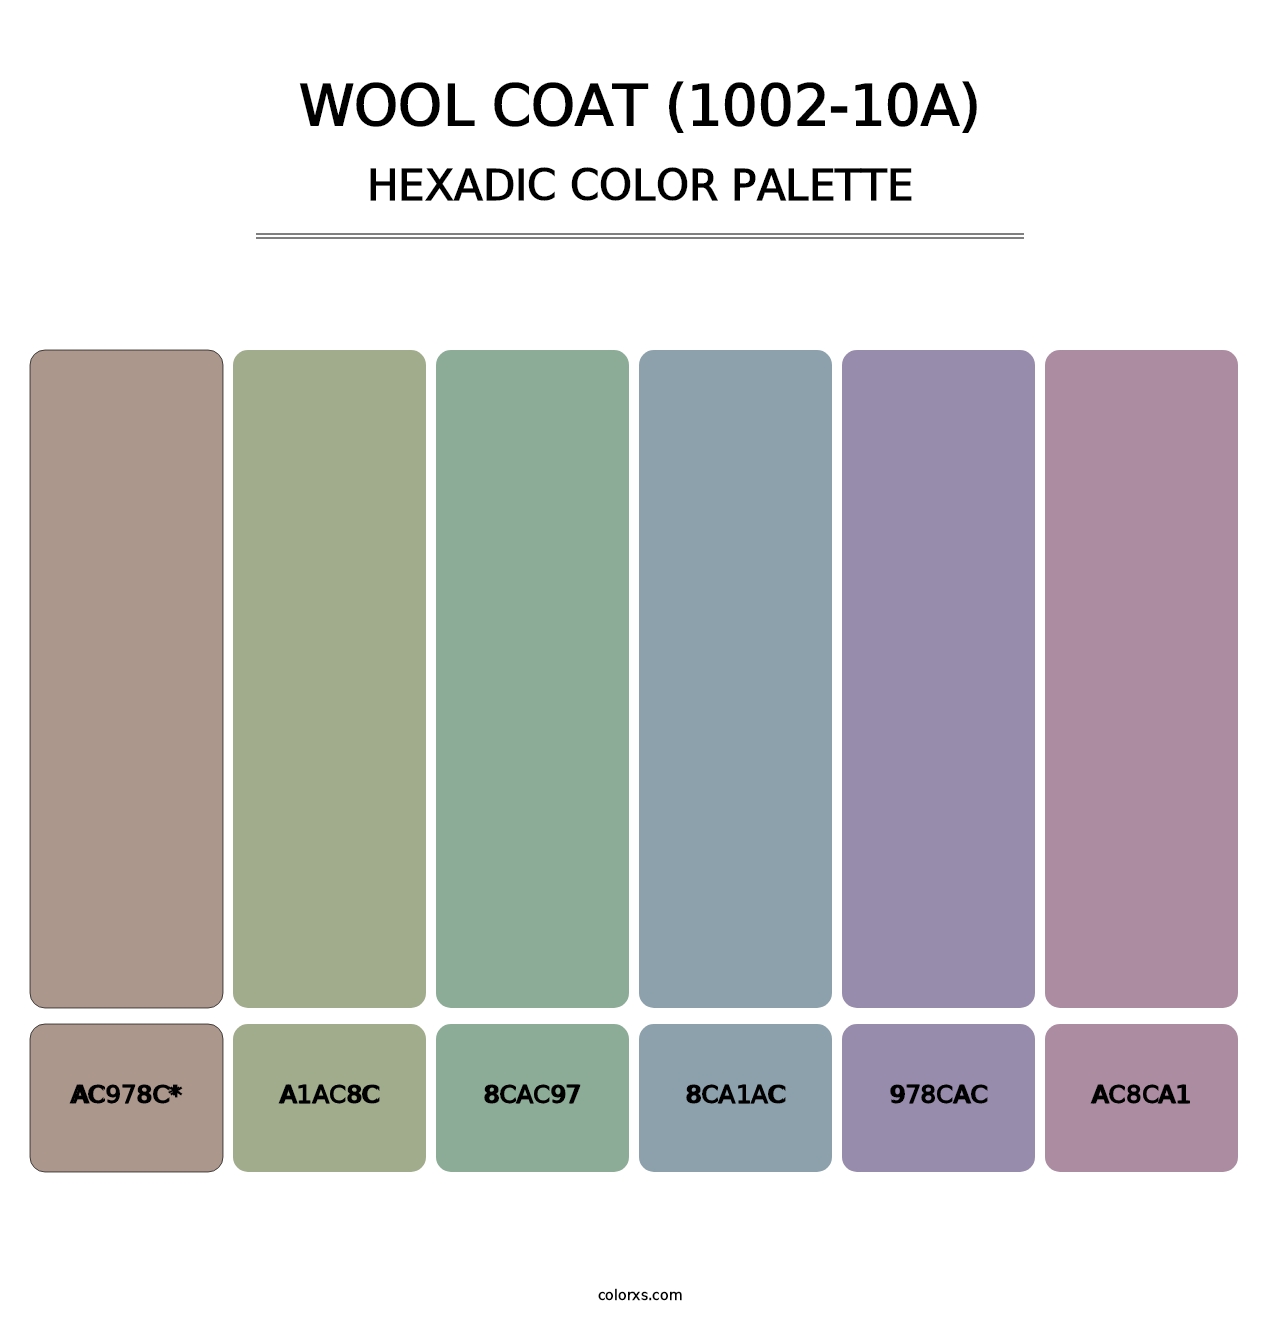 Wool Coat (1002-10A) - Hexadic Color Palette